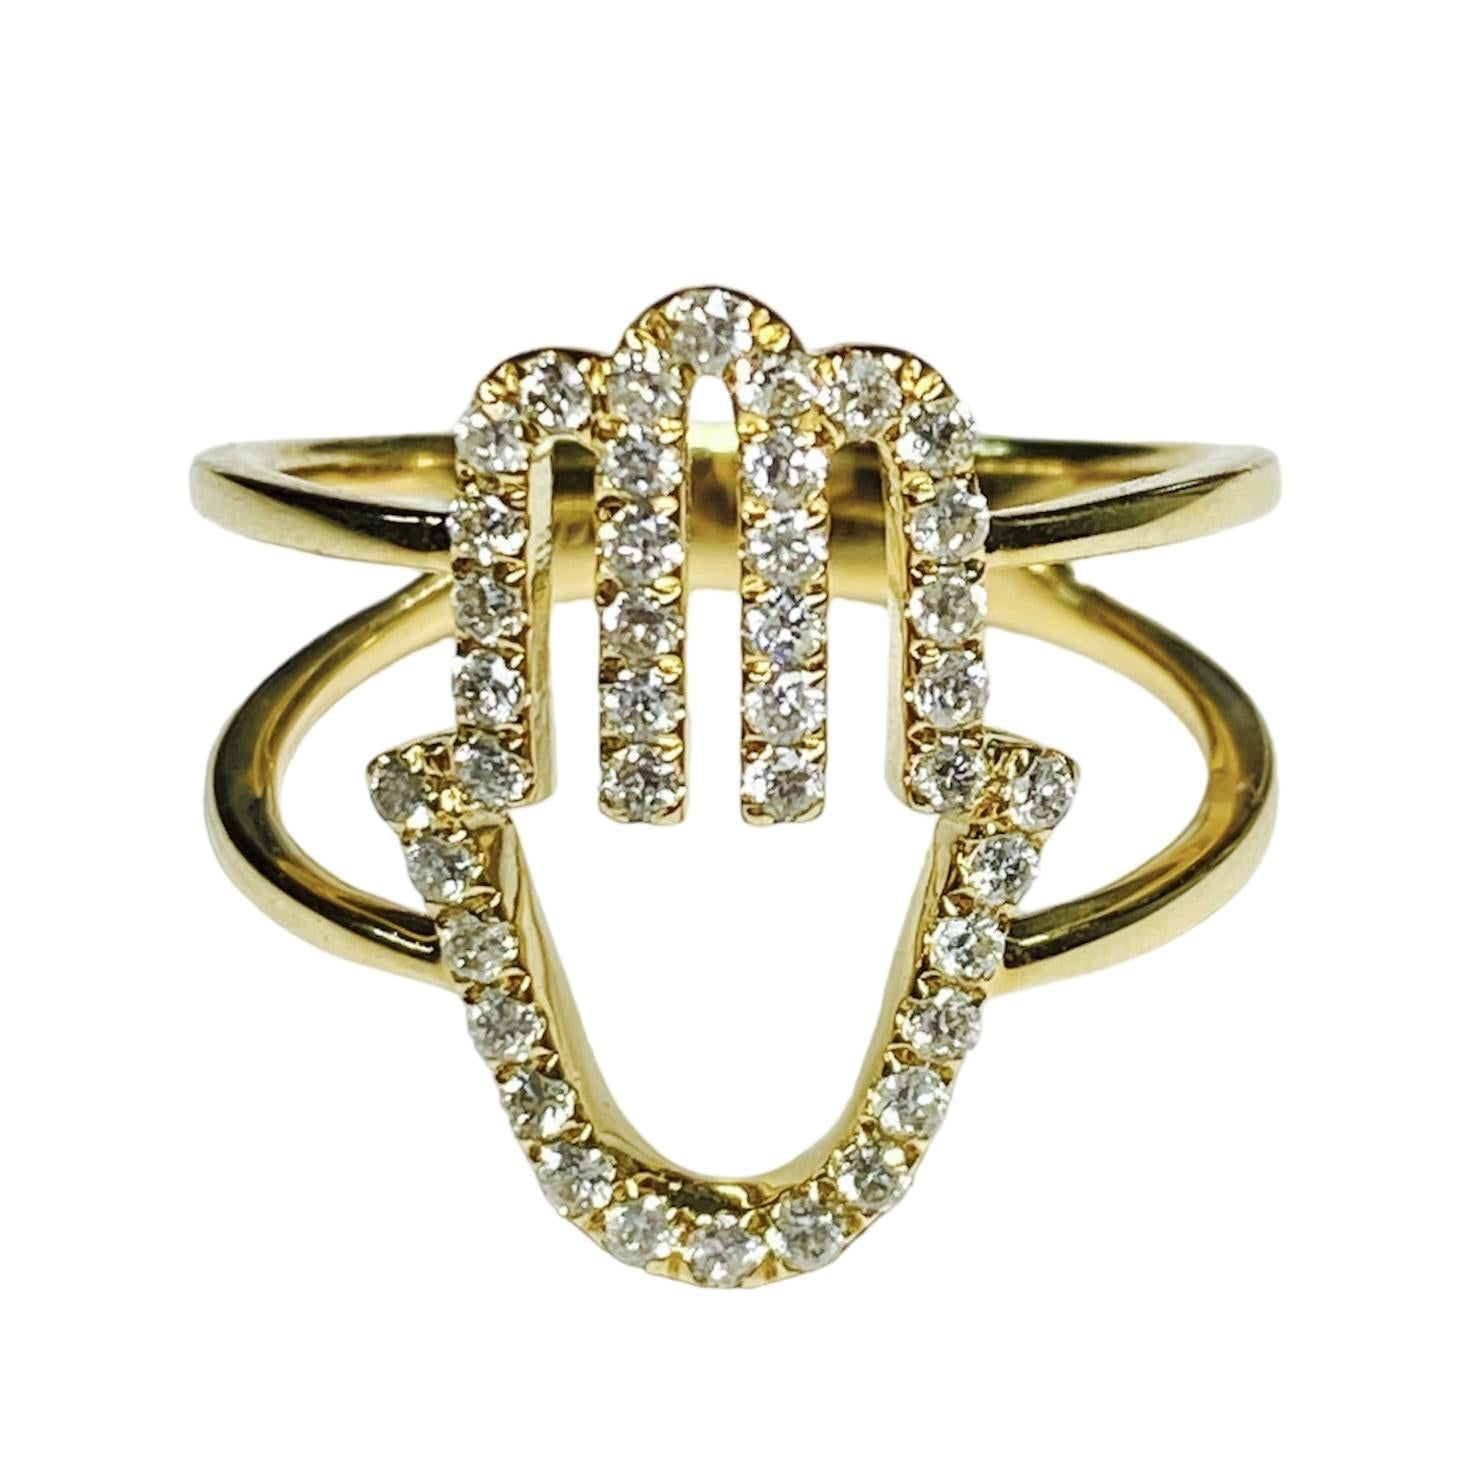 Der 14-karätige Hamsa-Diamantring ist ein fesselndes und spirituell bedeutsames Schmuckstück, das kulturelle Symbolik und luxuriöses Design nahtlos miteinander verbindet.
Gefertigt aus hochwertigem 14-karätigem Gold,
Dieser Ring zeigt das ikonische